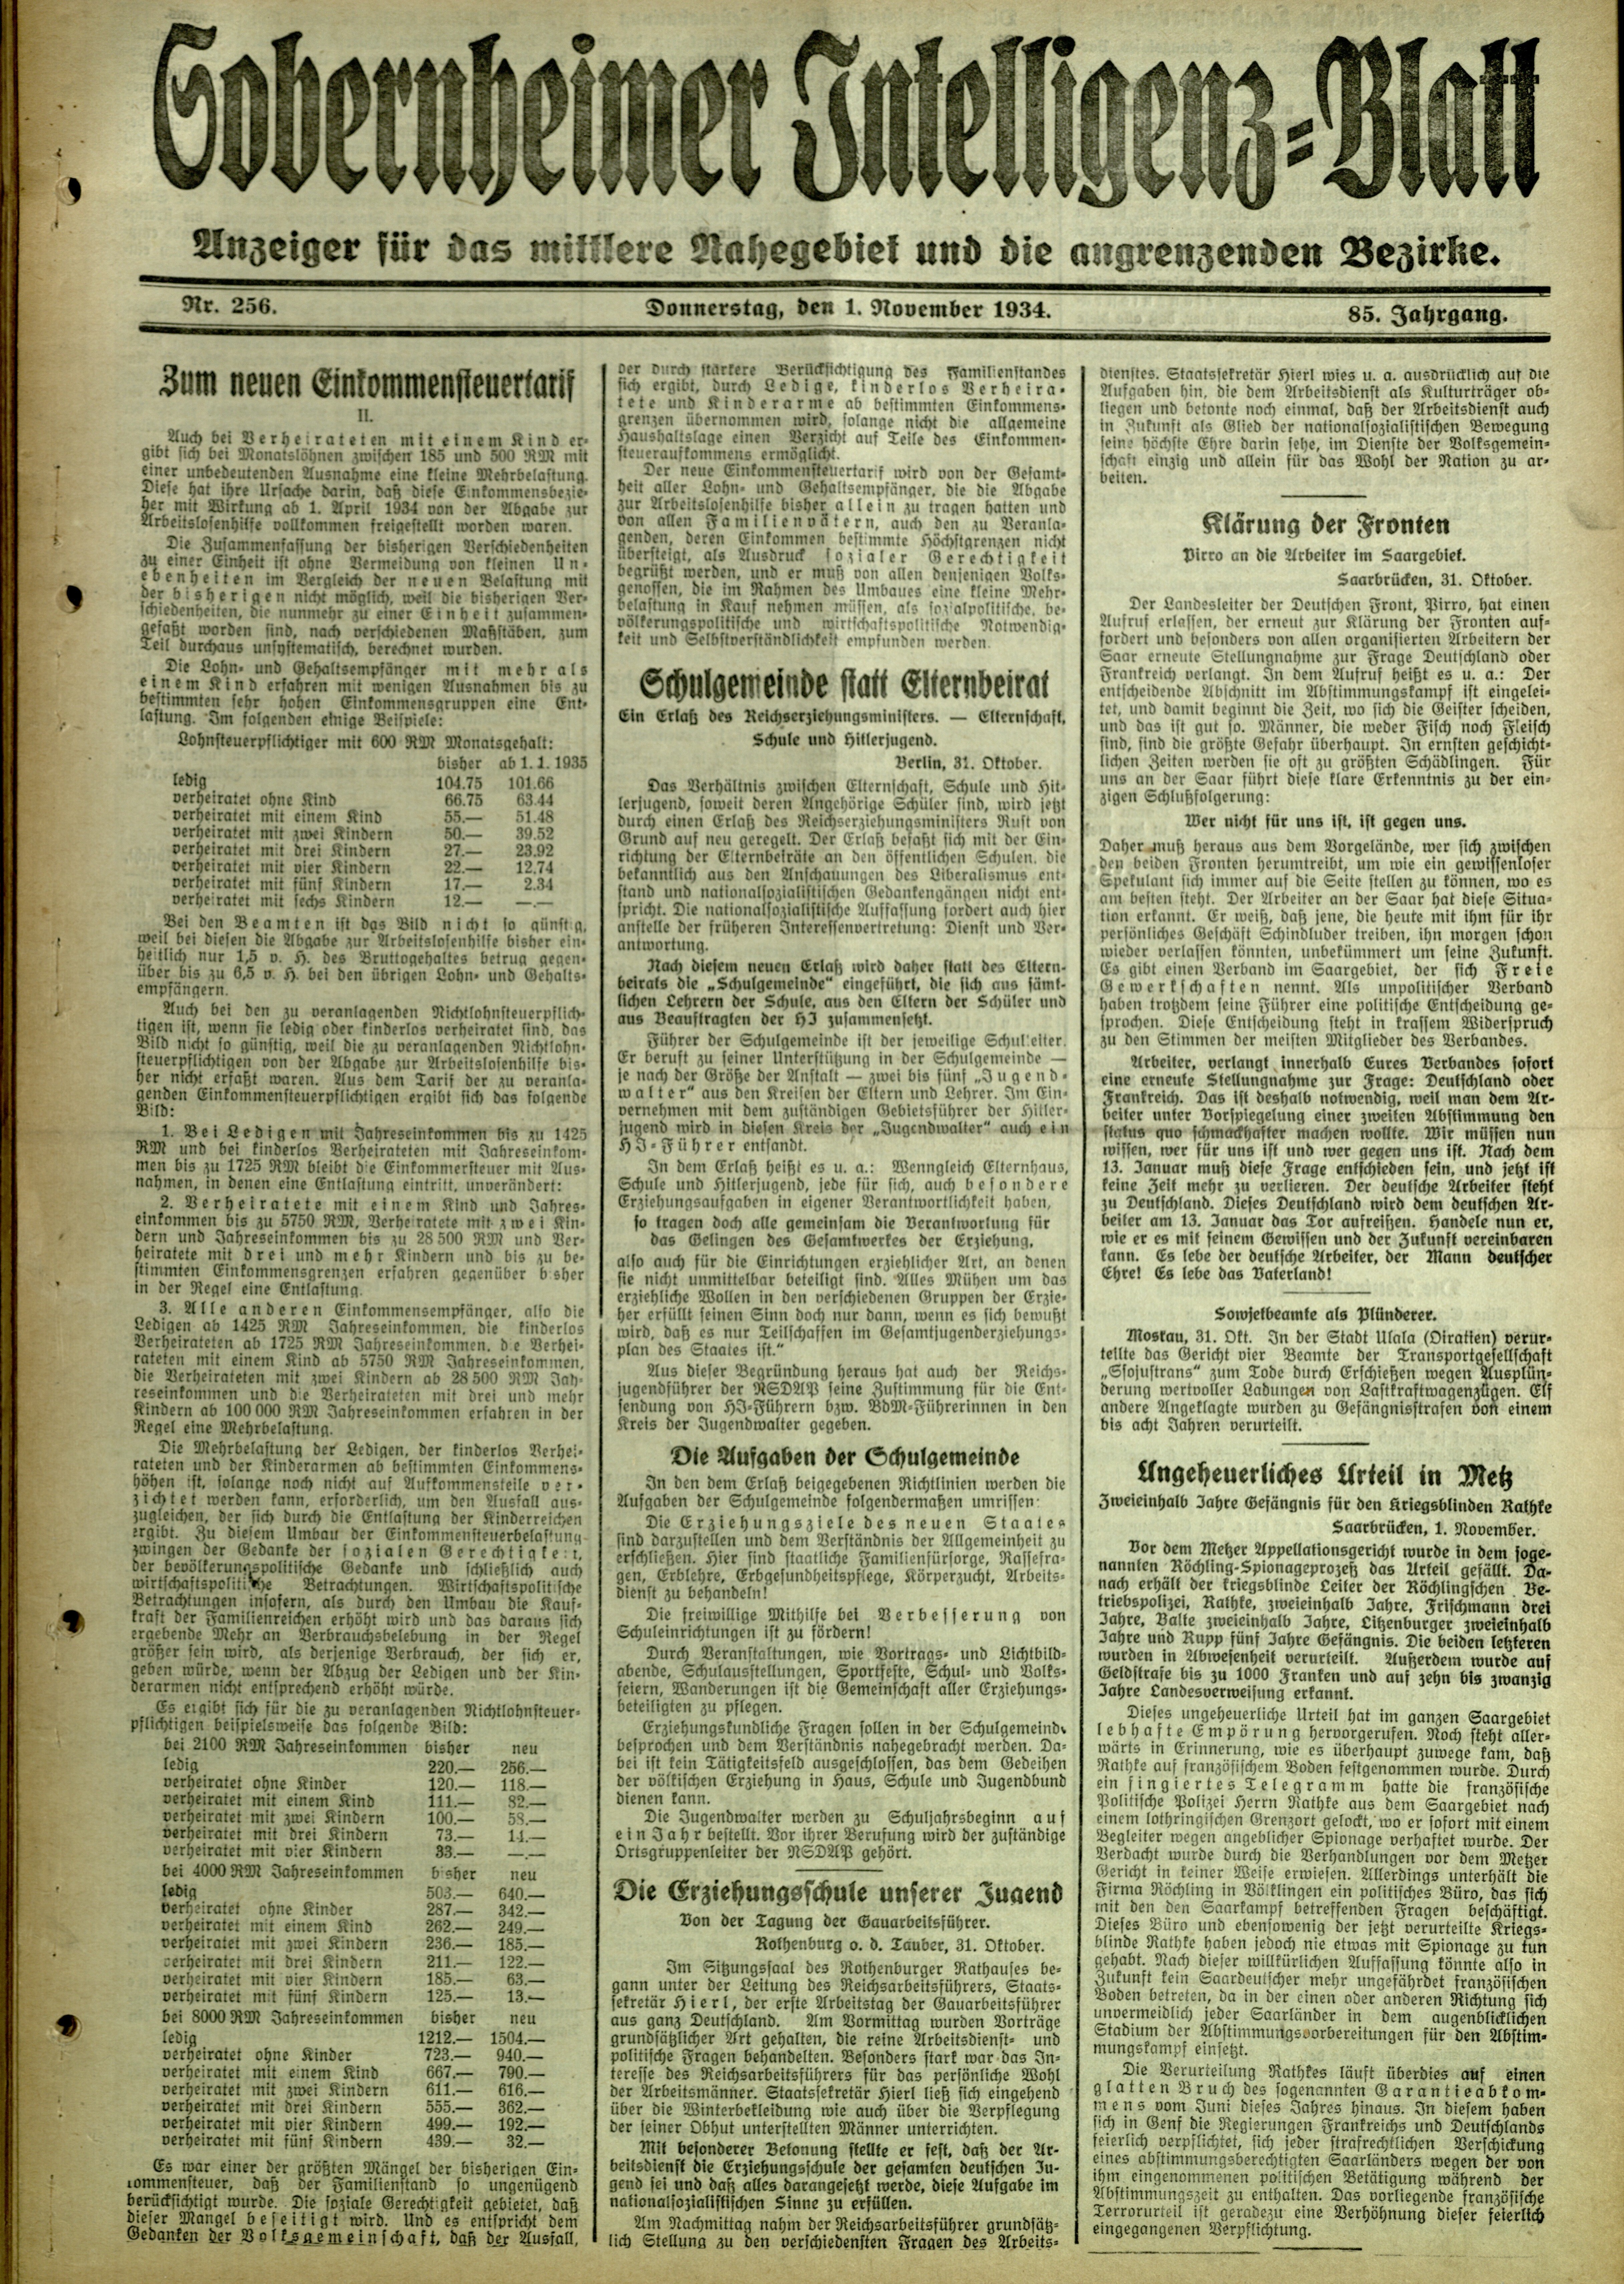 Zeitung: Sobernheimer Intelligenzblatt; November 1934, Jg. 85 Nr. 256 (Heimatmuseum Bad Sobernheim CC BY-NC-SA)